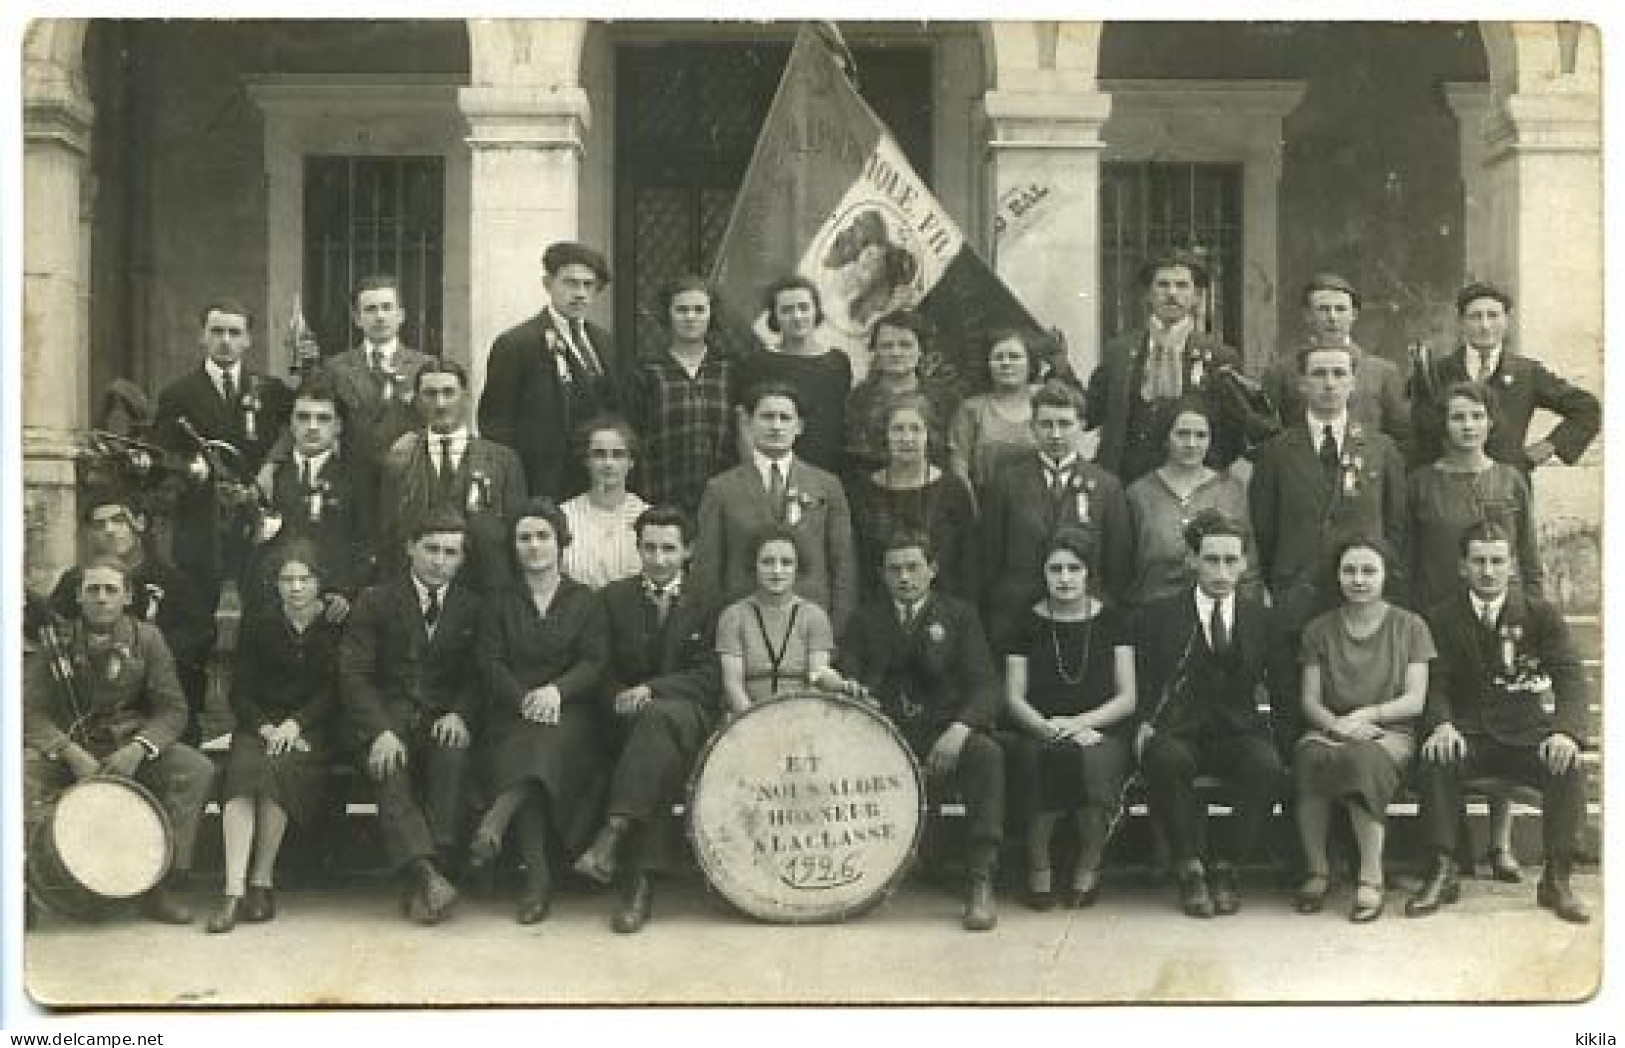 CPA 9 X 14 Isère  TULLINS  Conscrits De La Classe 1926 Avec La Liste Des Noms - Tullins